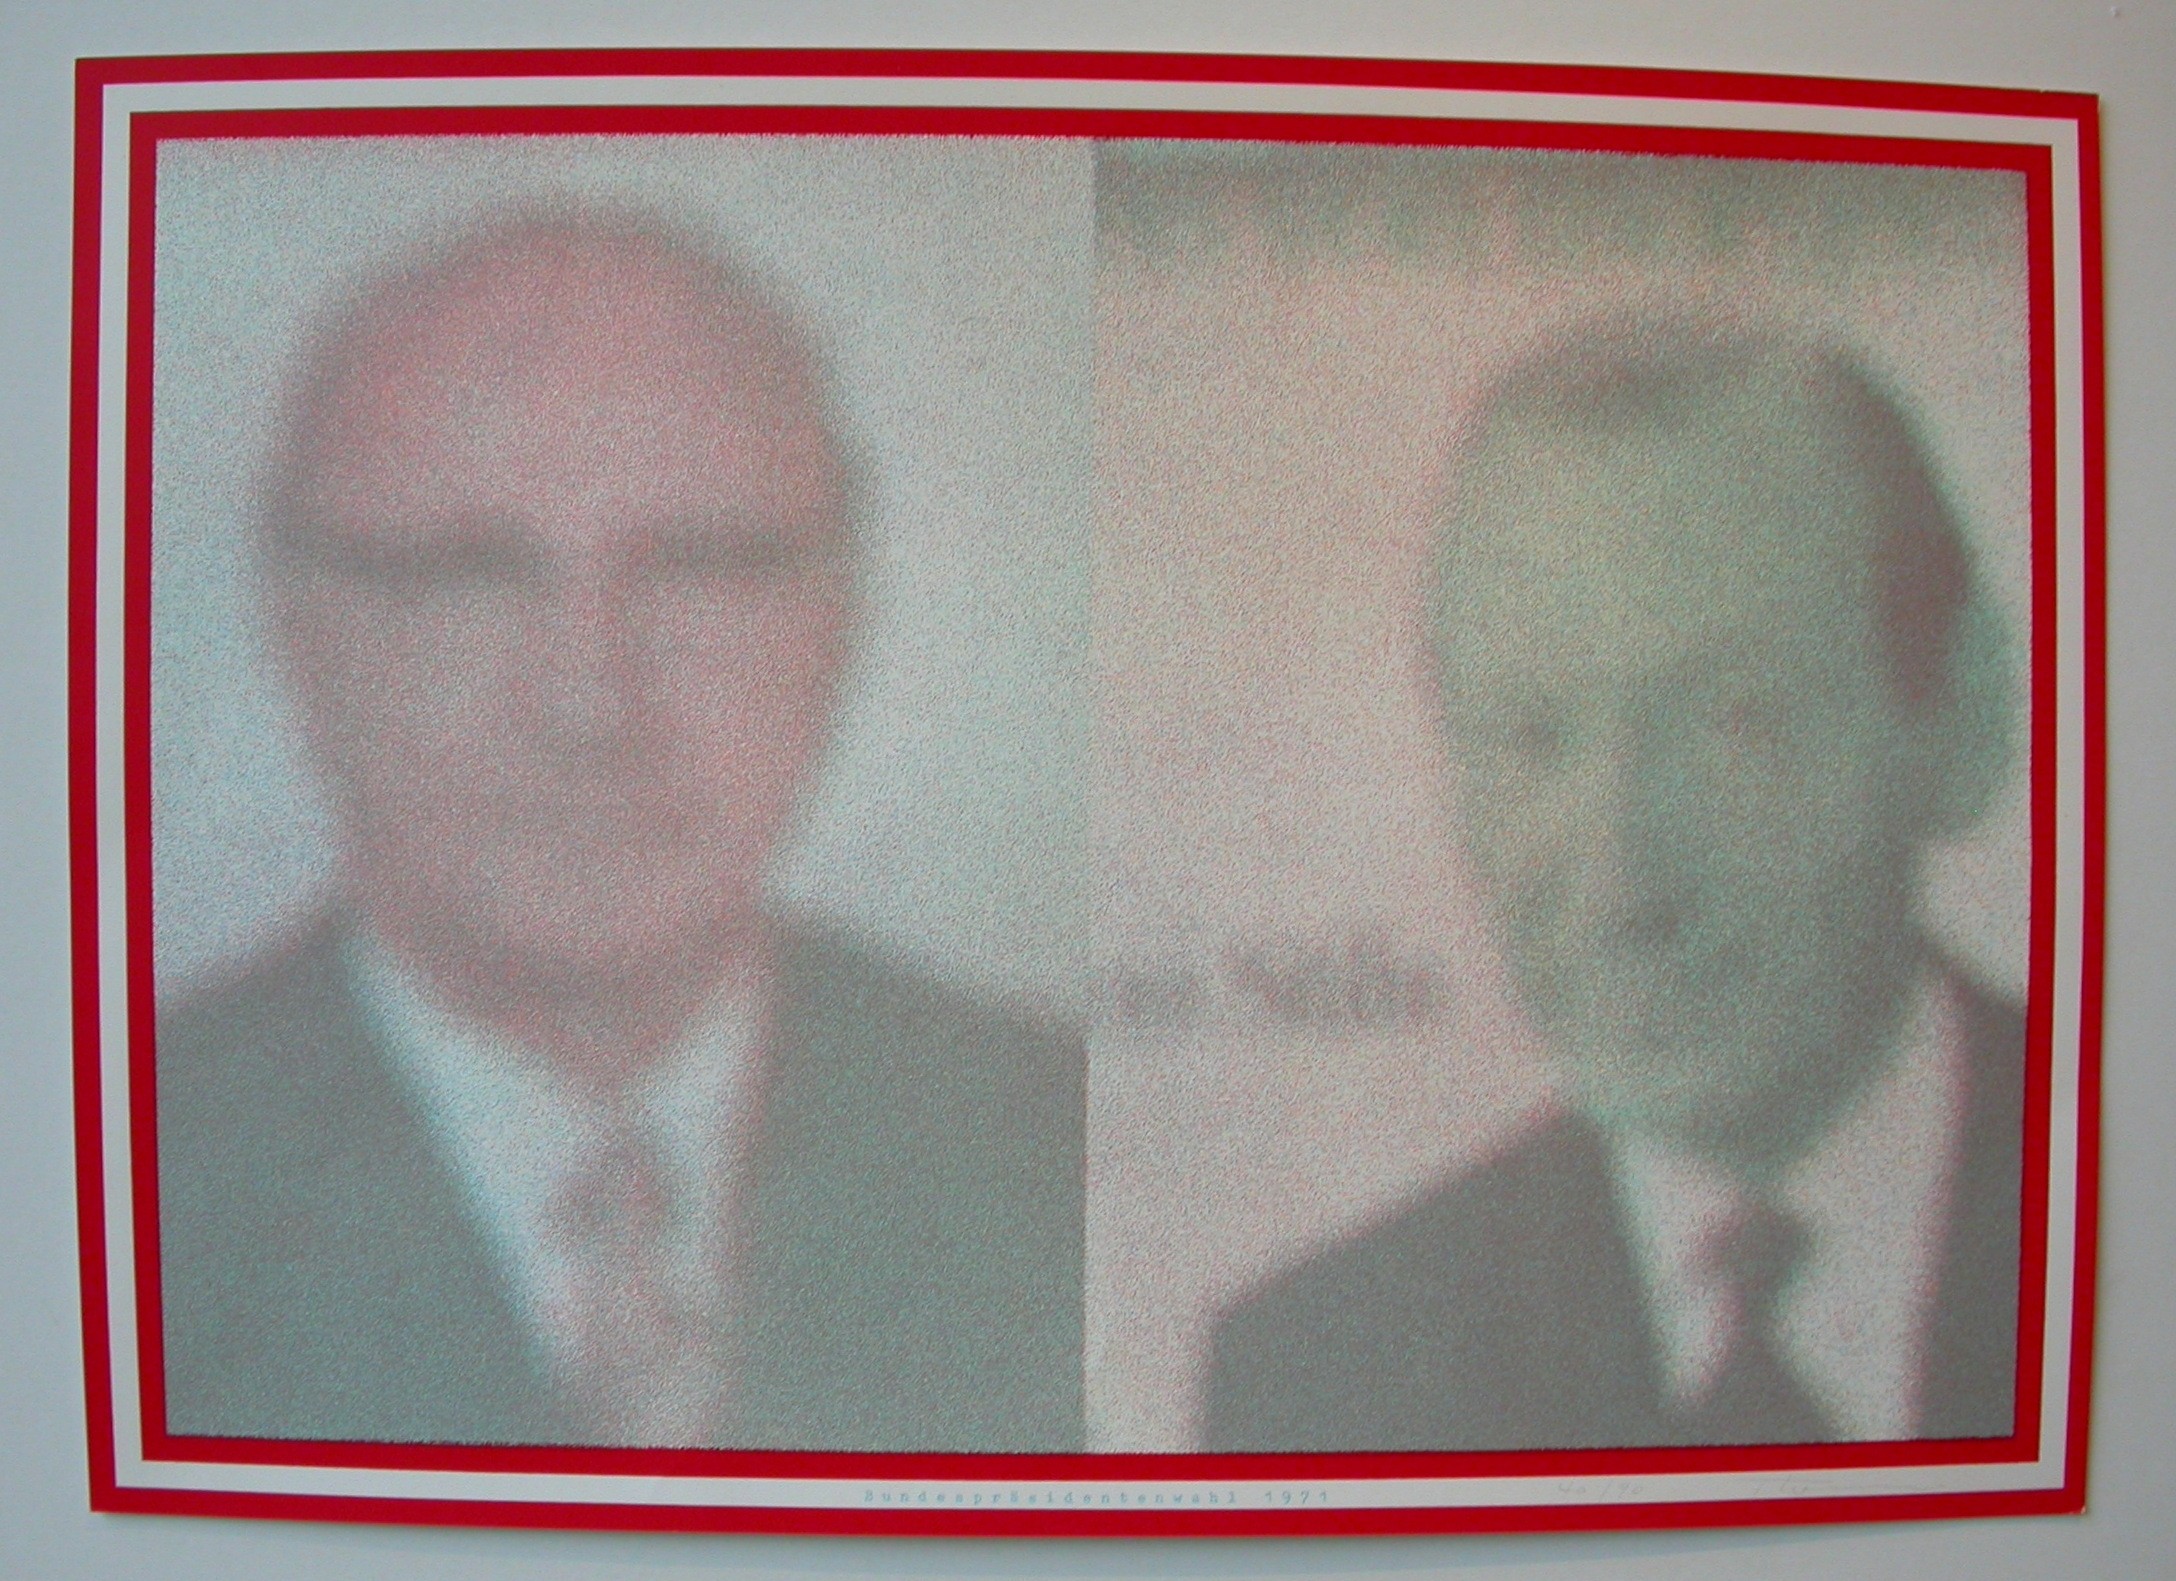  Thorn "Bundespräsidentenwahl 1971"